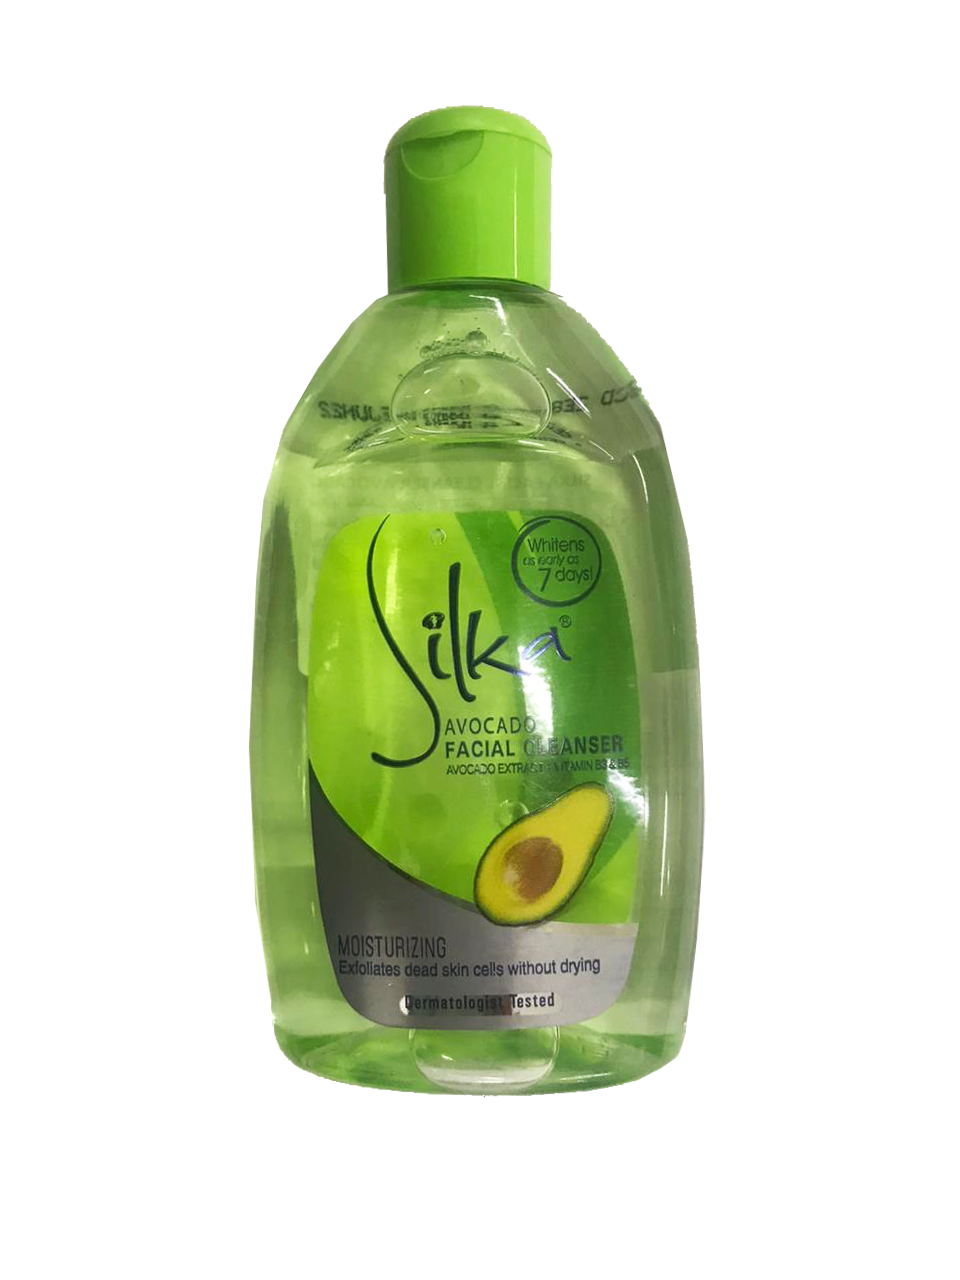 Silka Facial Cleanser Avocado 150ml